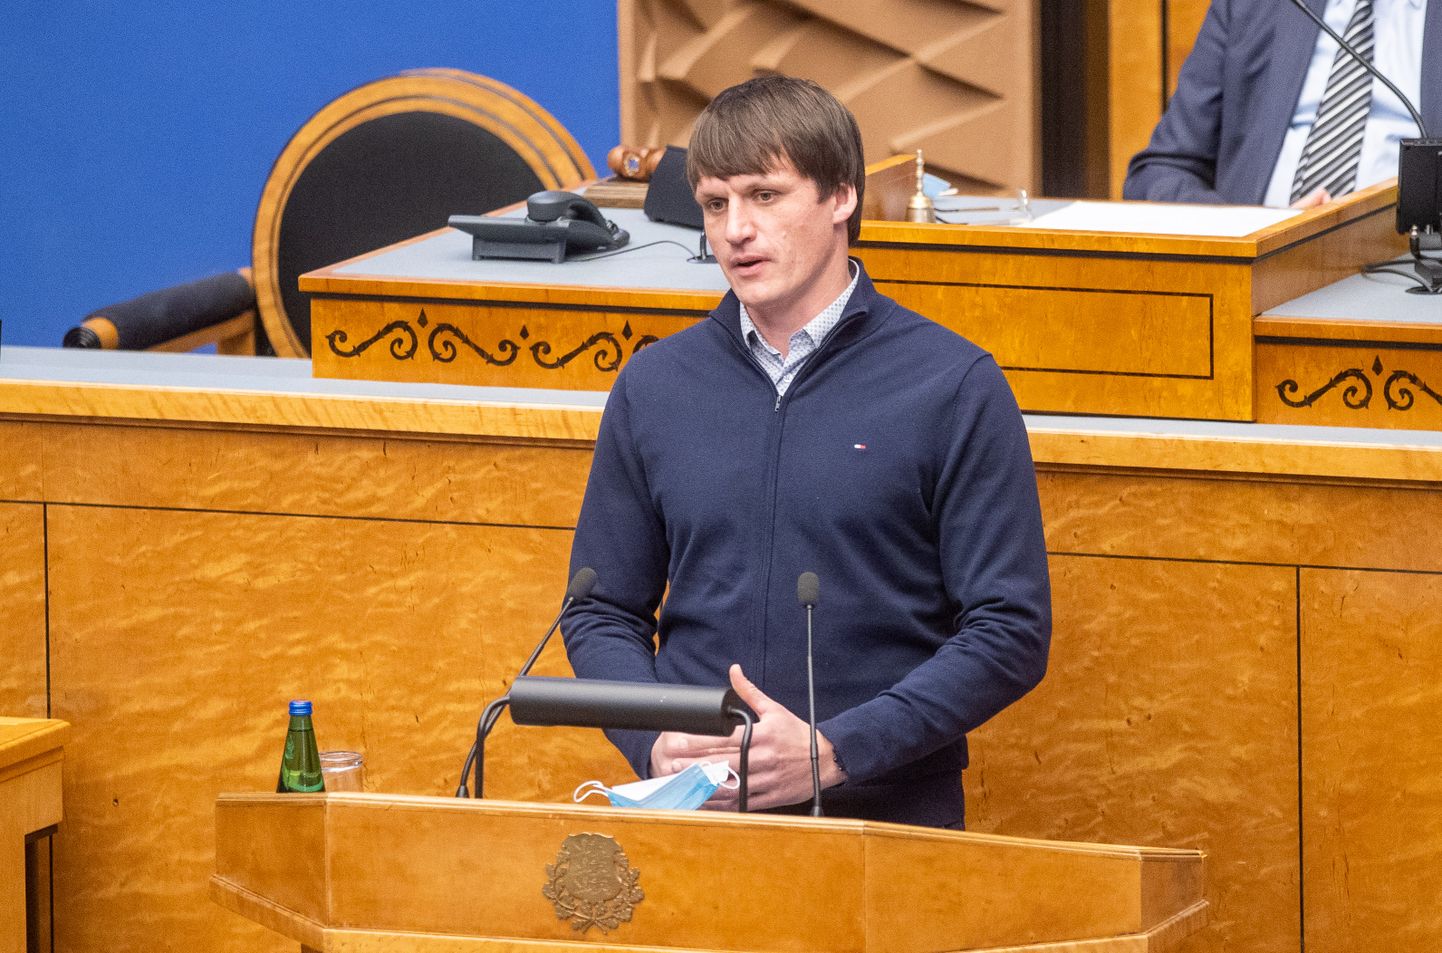 Olulise tähtsusega riikliku küsimuse „Estonia hukk – kas tõde tõuseb viimaks pinnale?“ arutelu Riigikogus. Ain-Alar Juhanson.